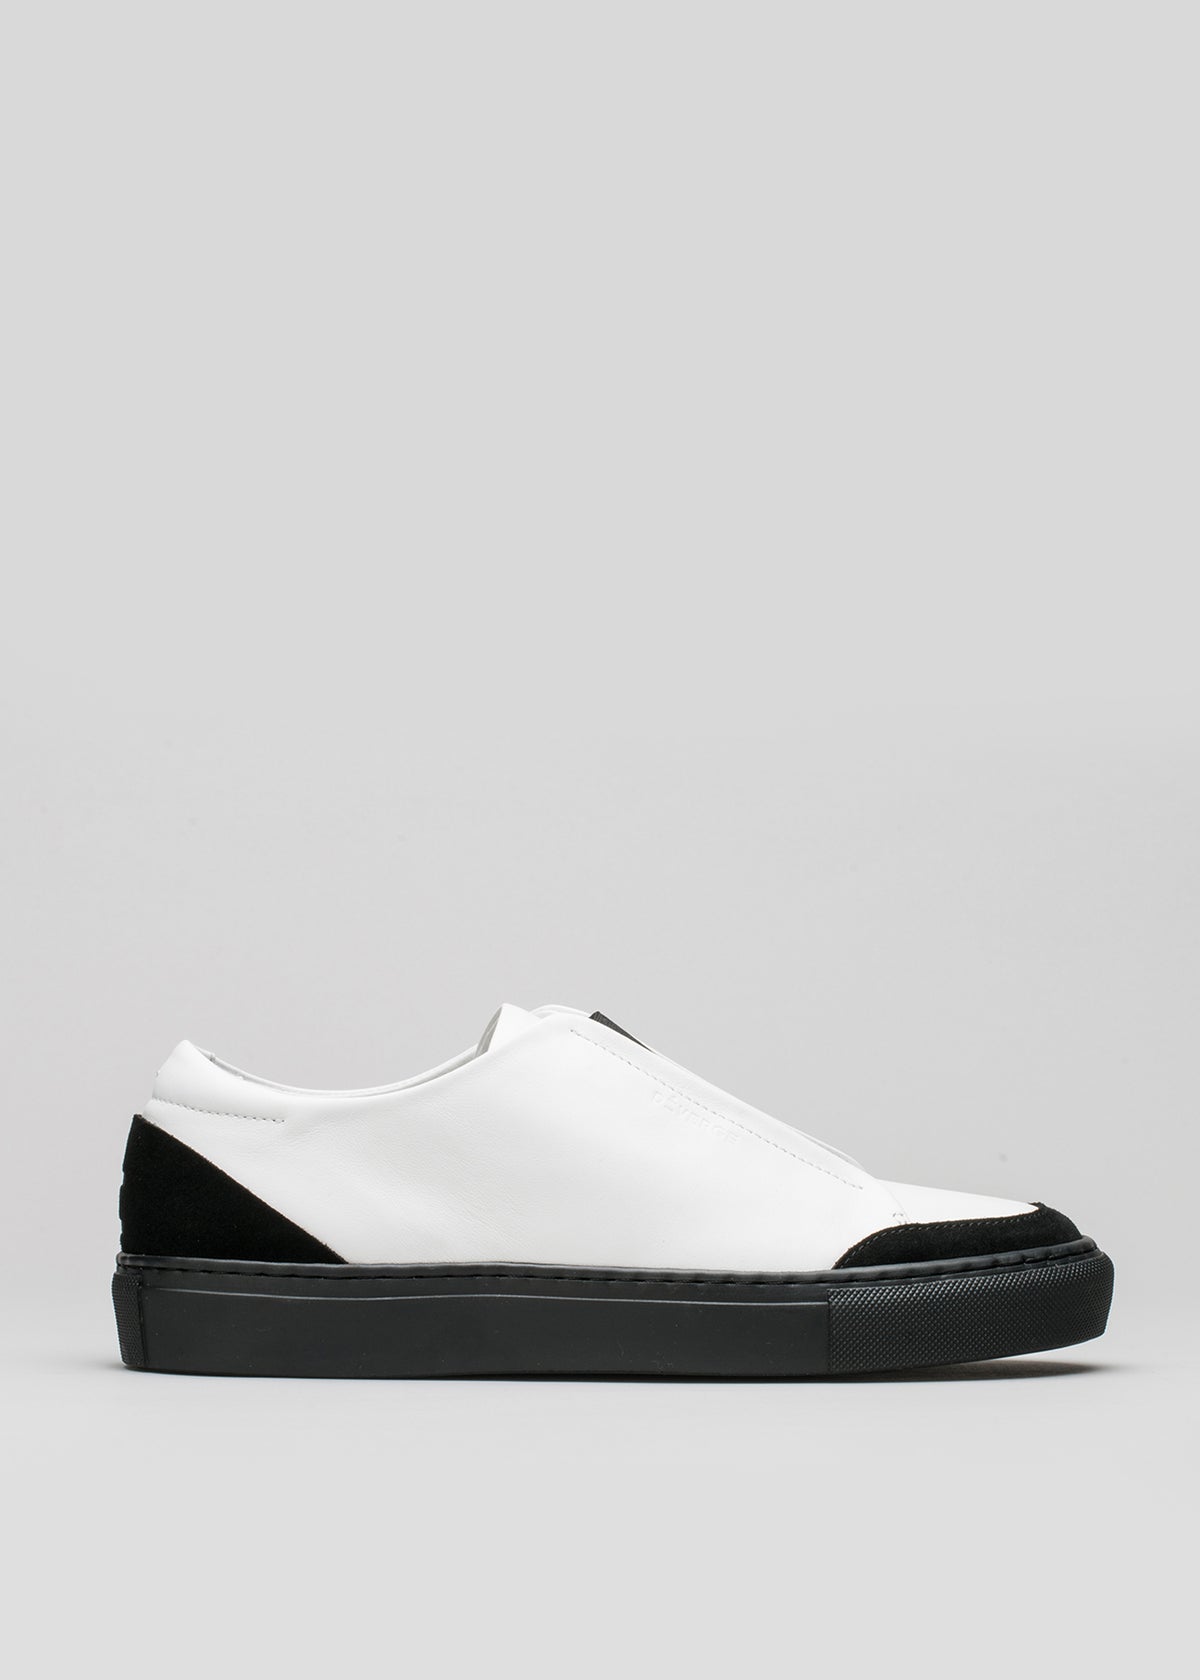 Sneaker slip-on V6 in pelle bianca e nera con suola e punta nere su sfondo grigio chiaro.